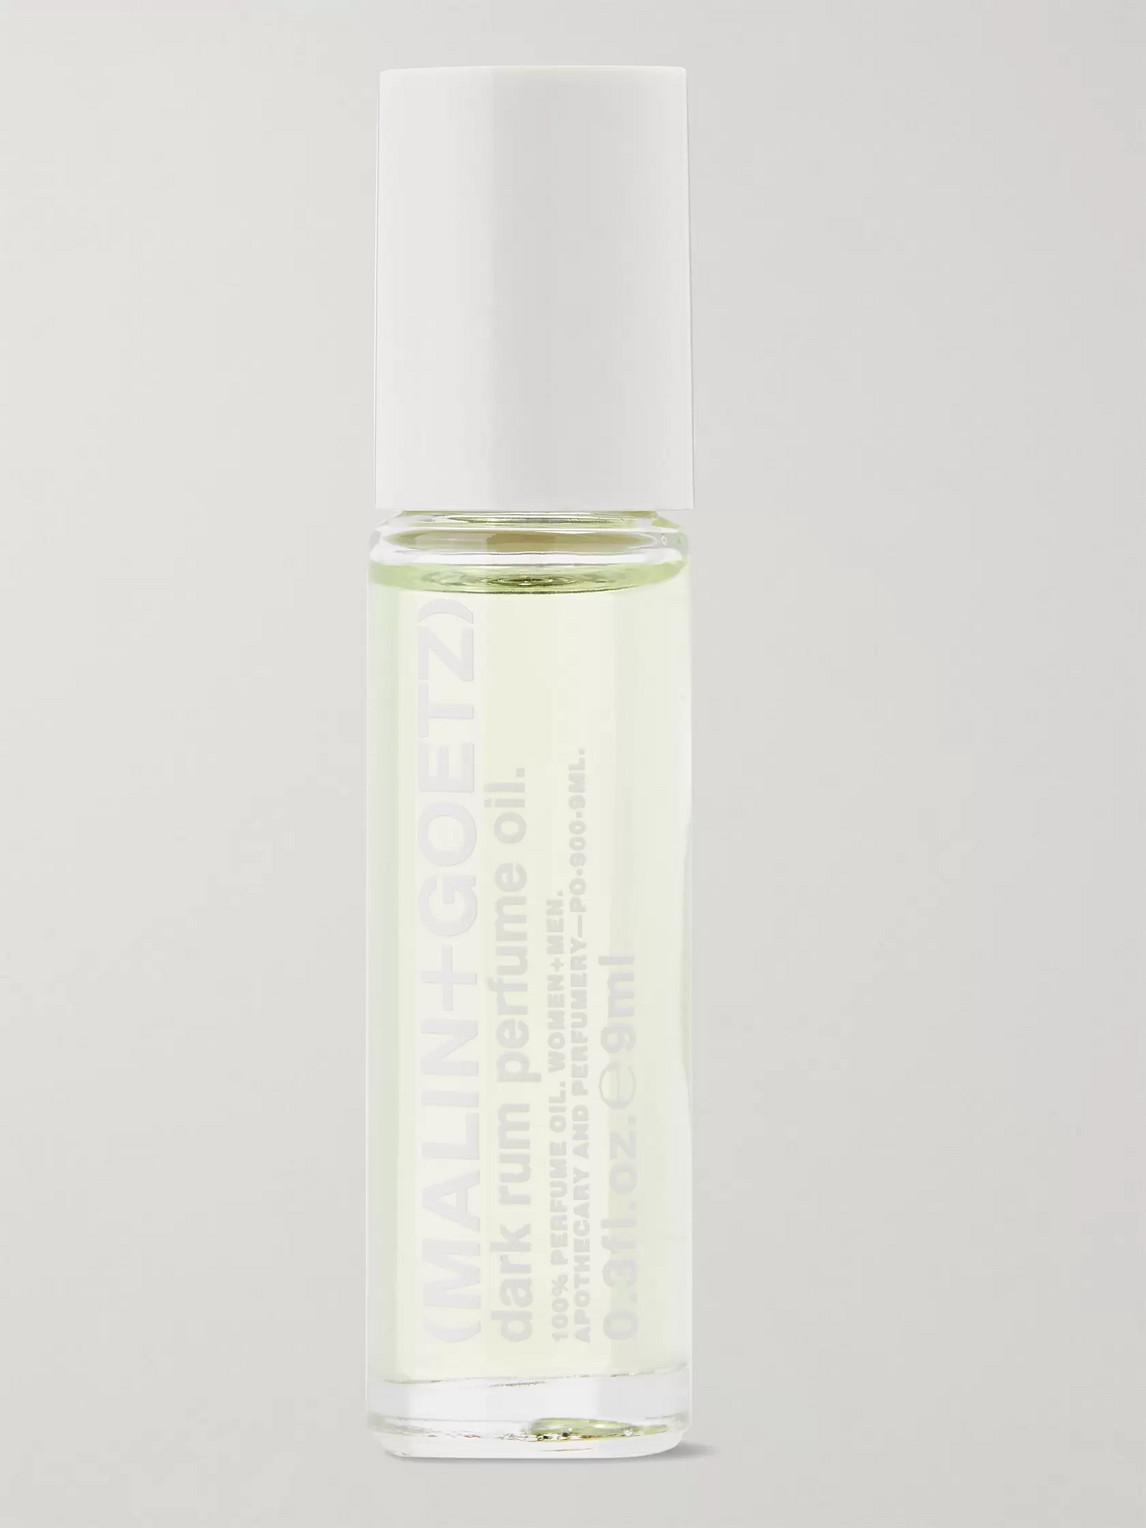 Malin + Goetz Dark Rum Roll-on Perfume Oil, 9ml In Colorless